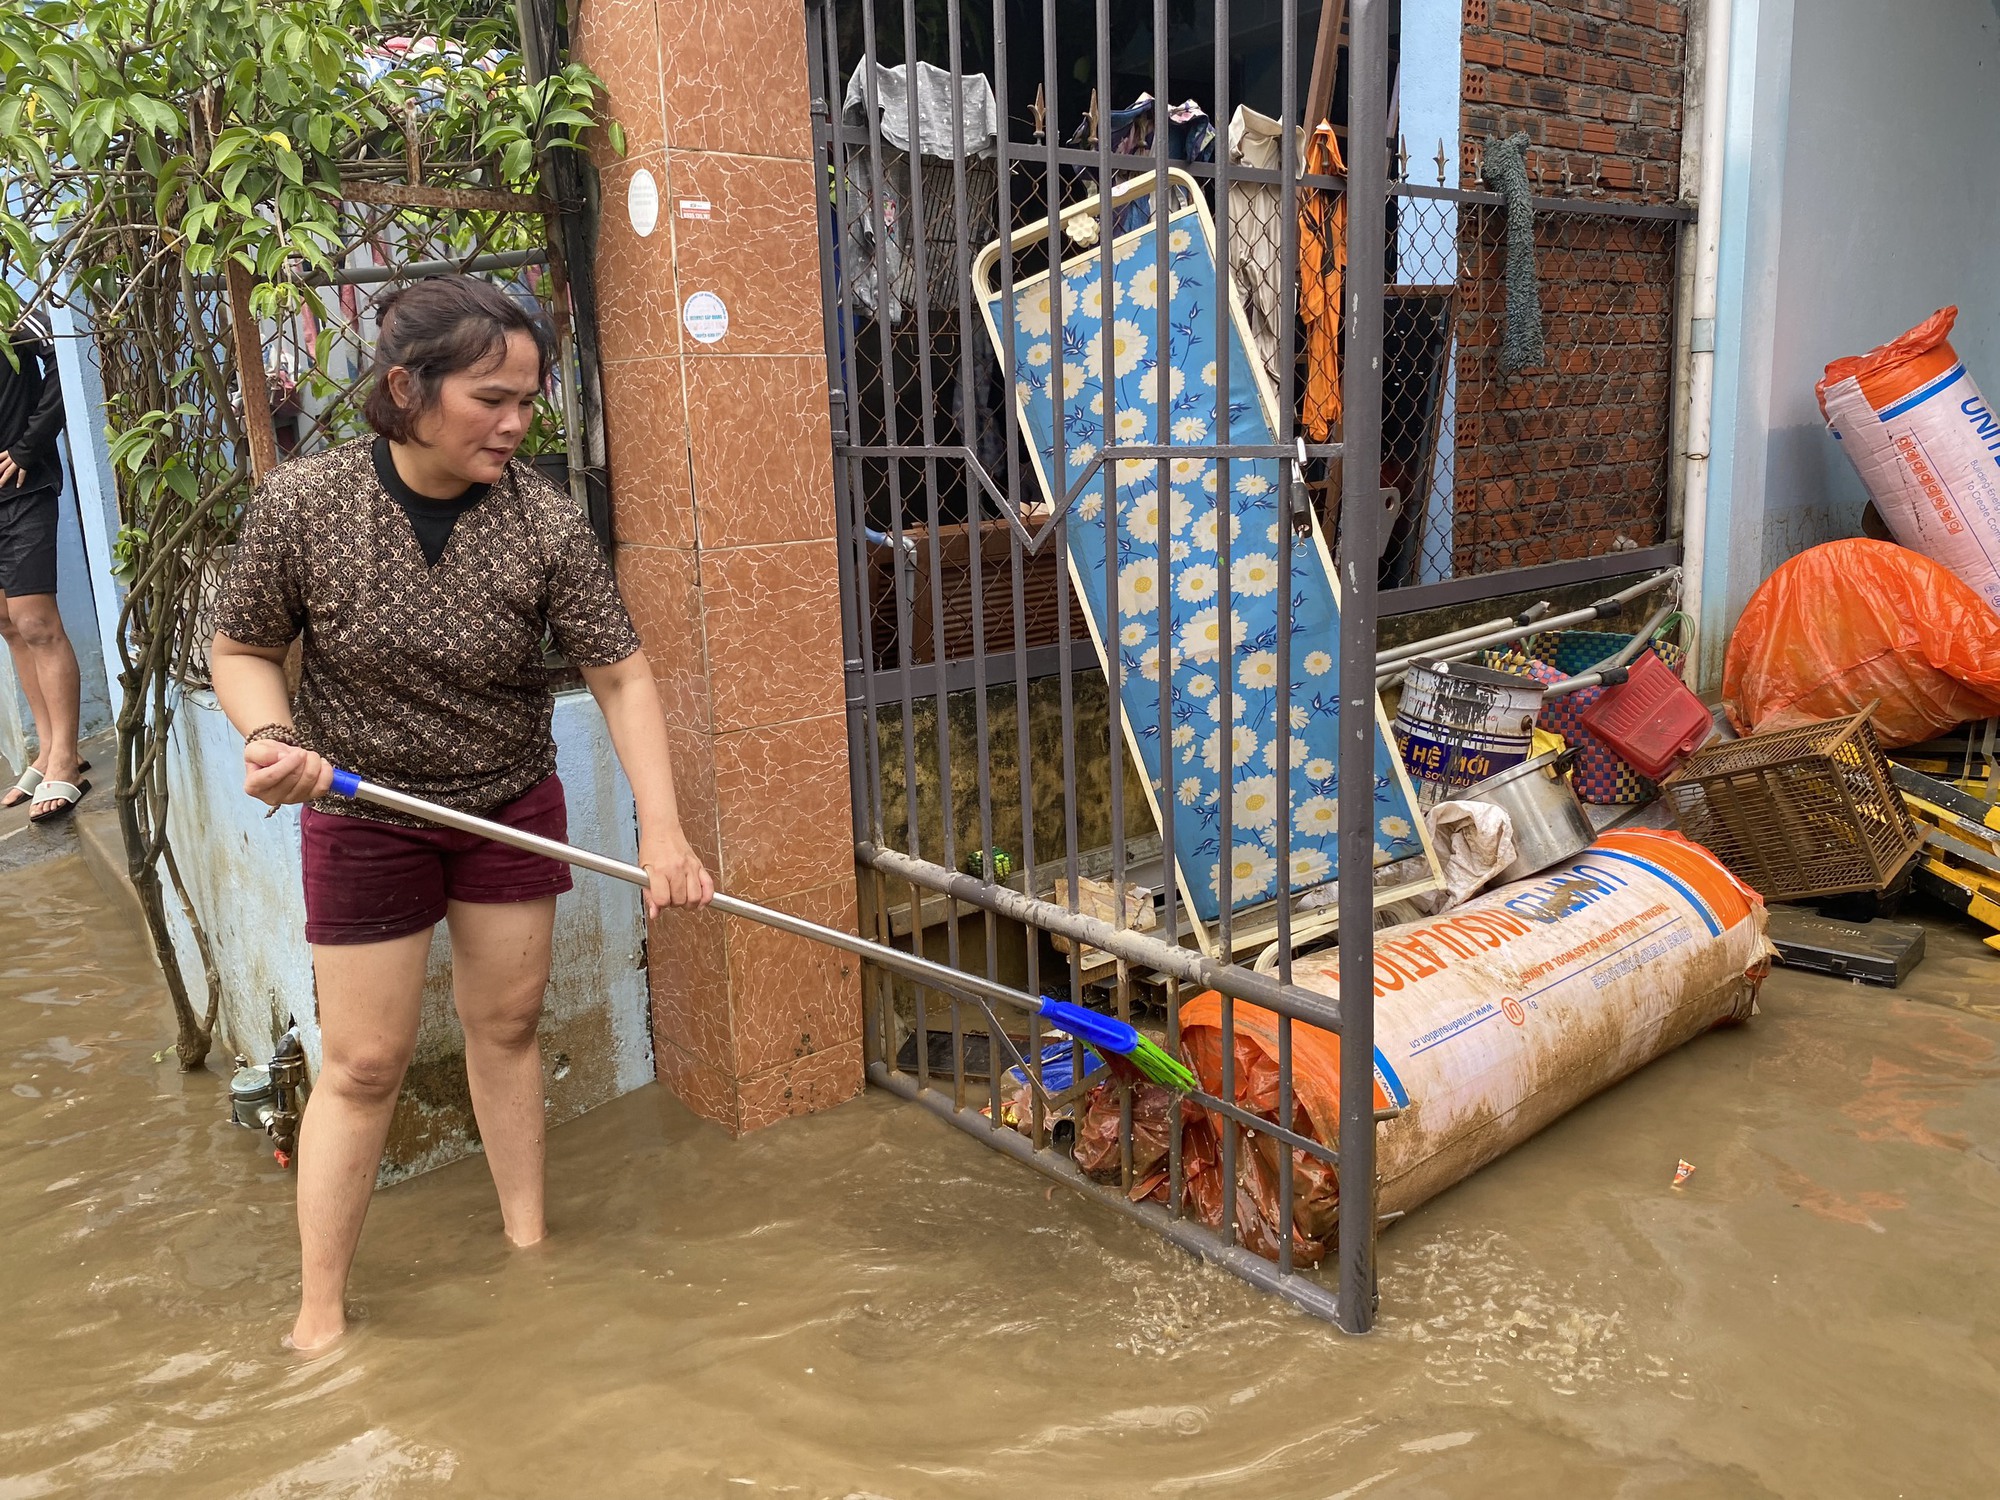 Suất ăn 0 đồng, sửa xe miễn phí giúp người dân vùng ngập lụt - Ảnh 1.